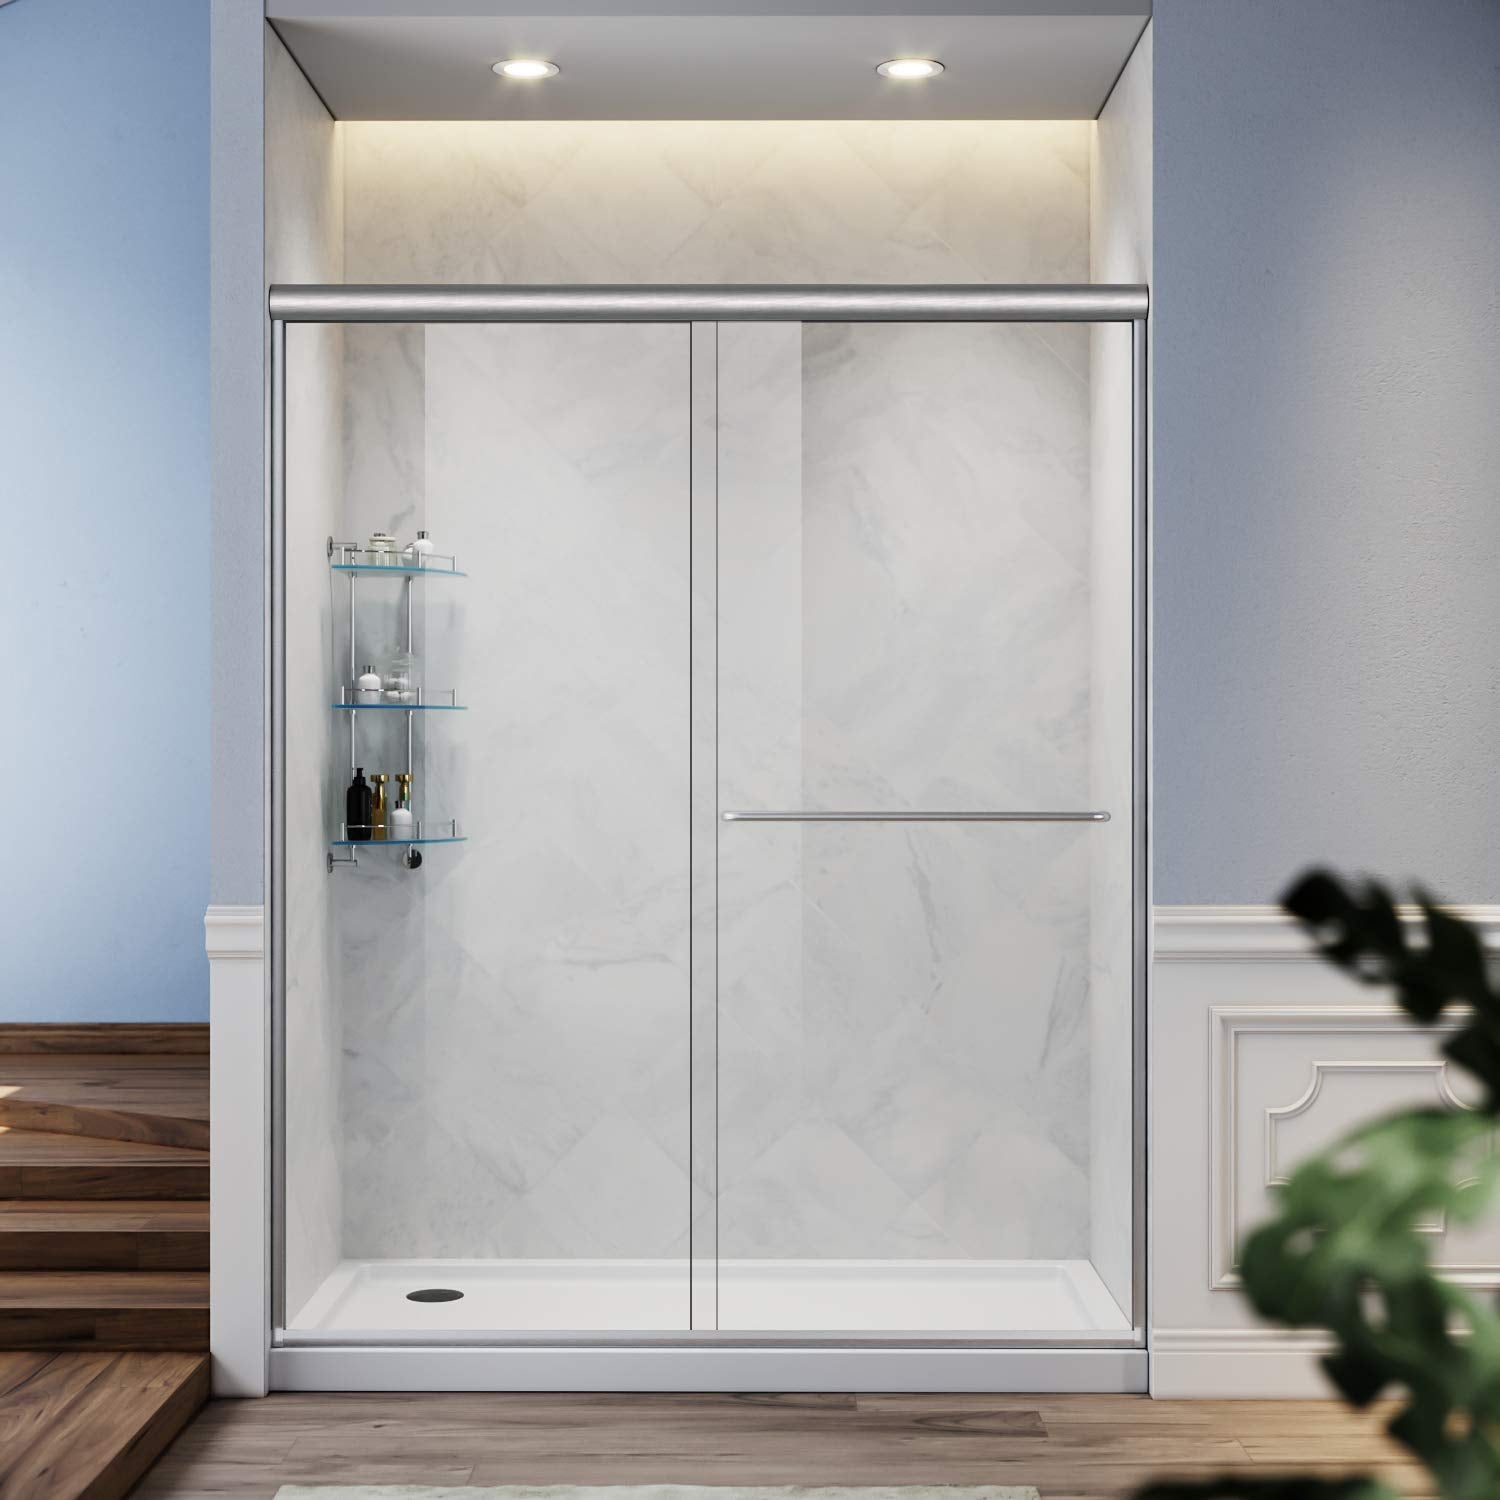 Semi-Frameless Bypass Sliding Shower Doors in Brushed Nickel Finish - 48W x 72H